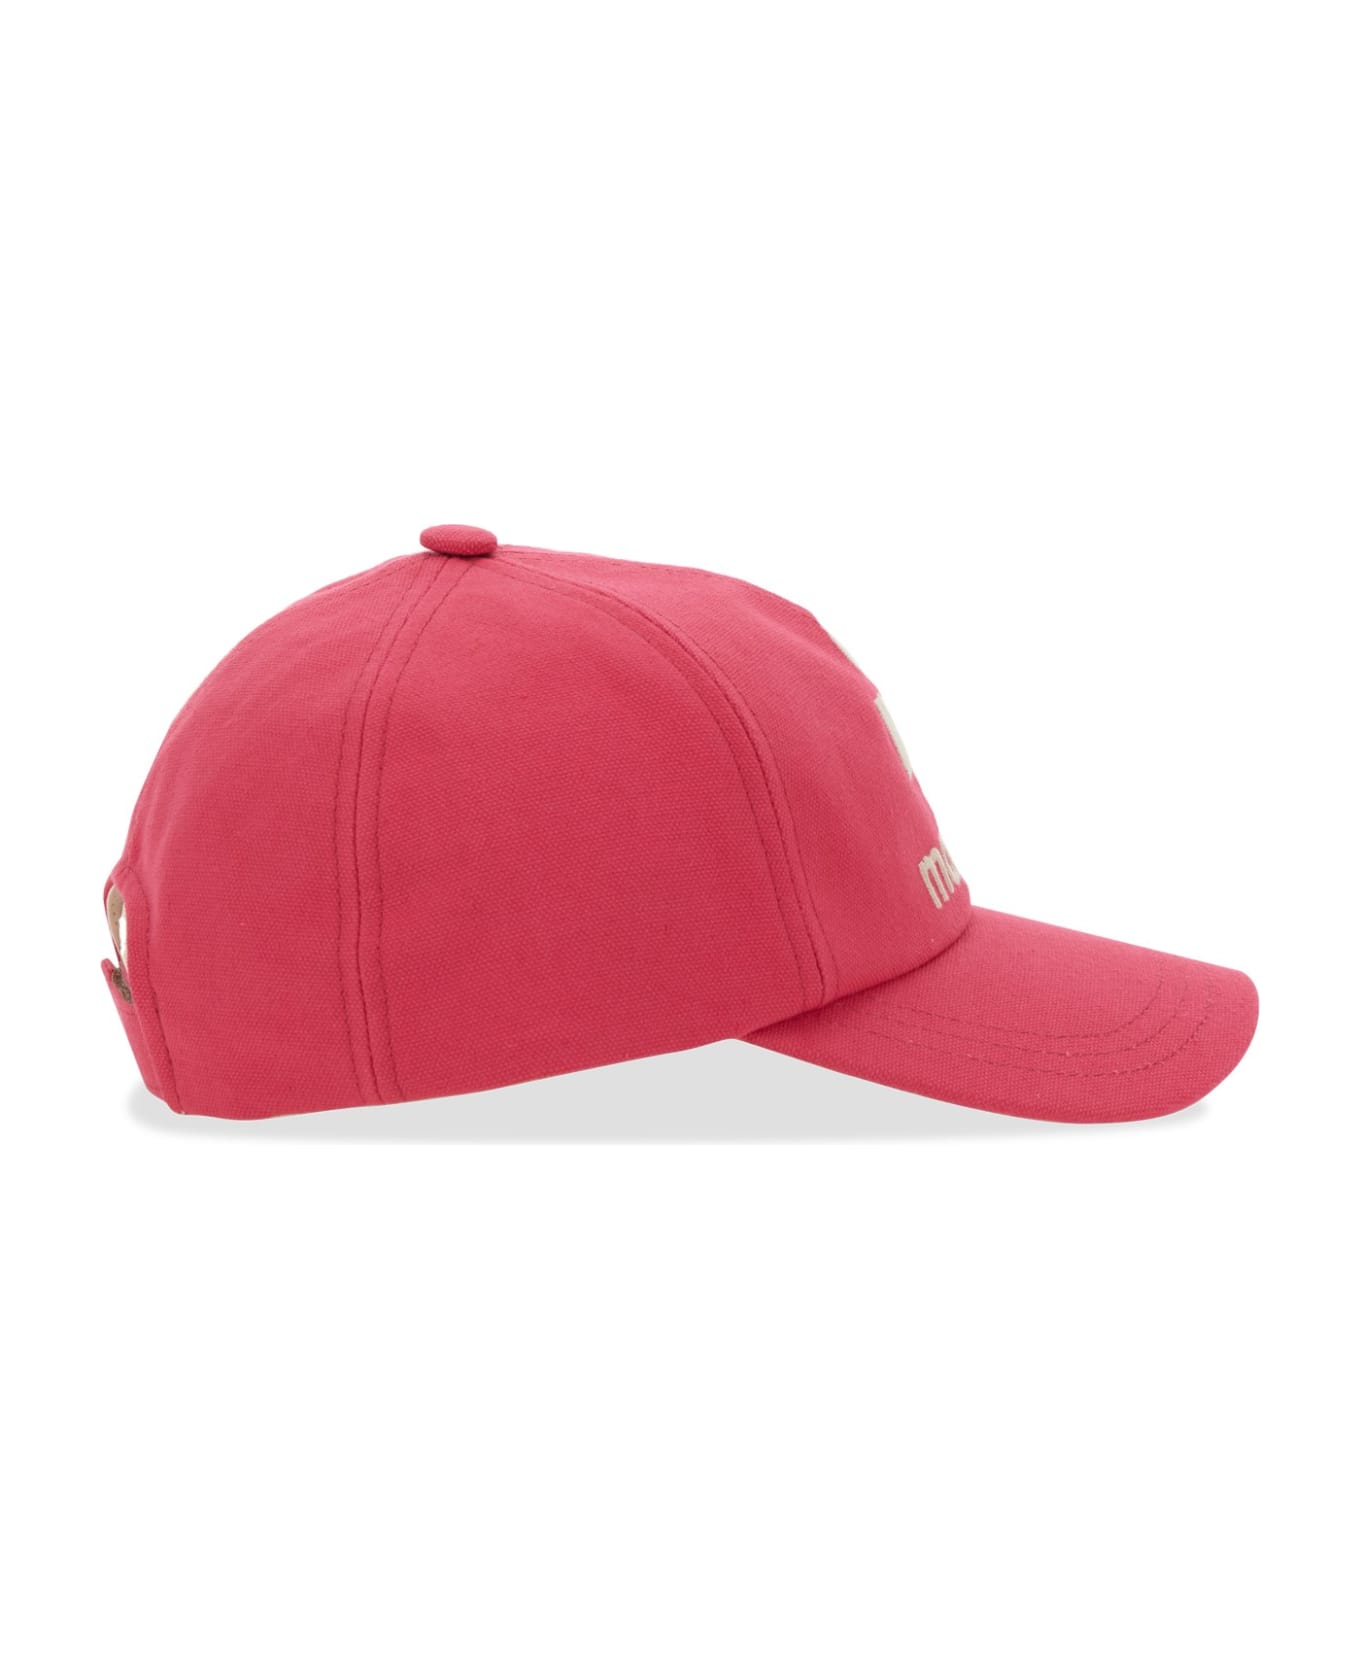 Isabel Marant Baseball Hat - Pink 帽子